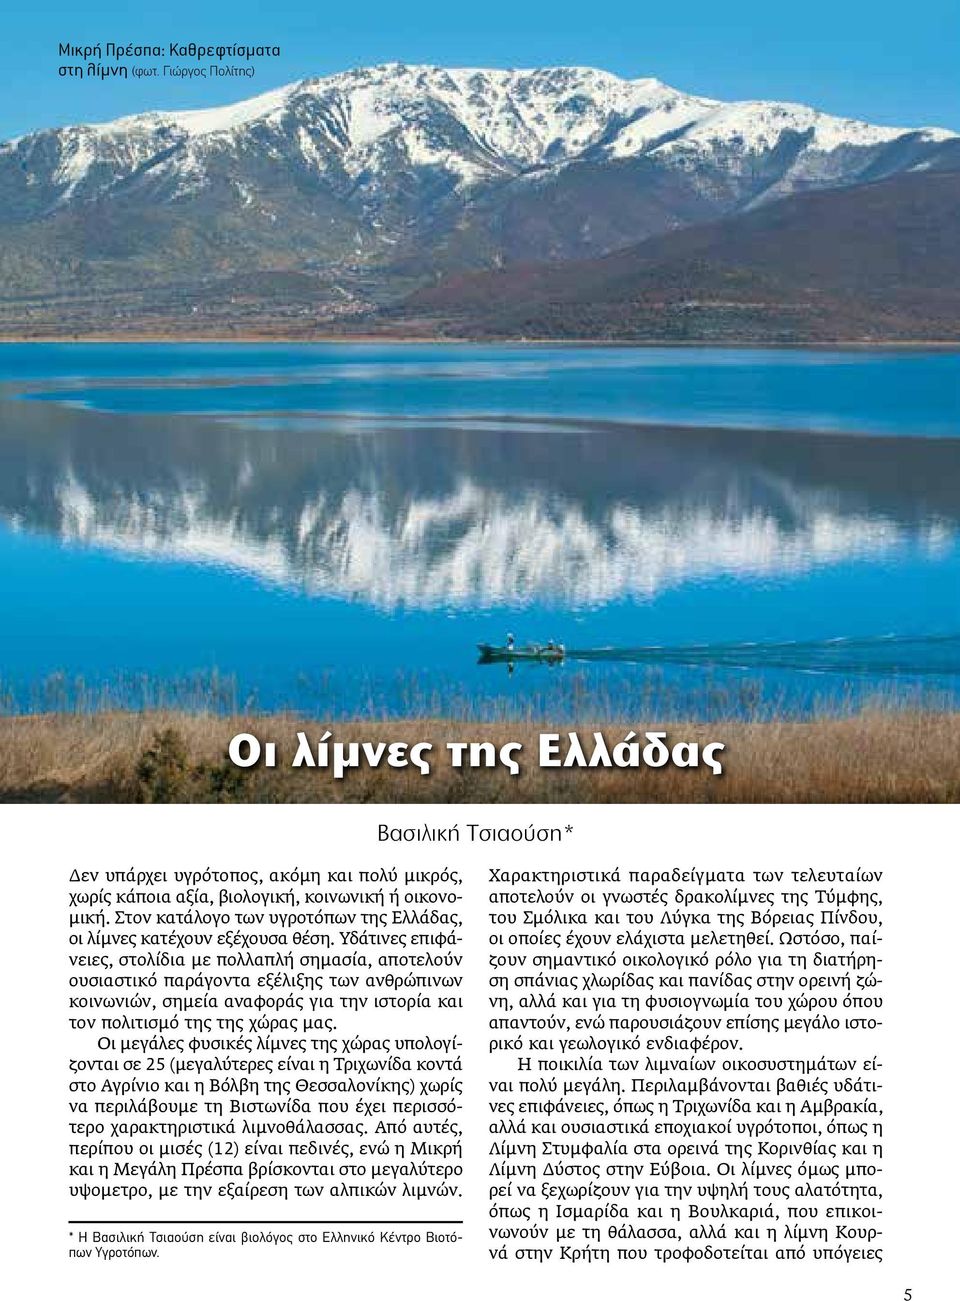 Στον κατάλογο των υγροτόπων της Ελλάδας, οι λίμνες κατέχουν εξέχουσα θέση.